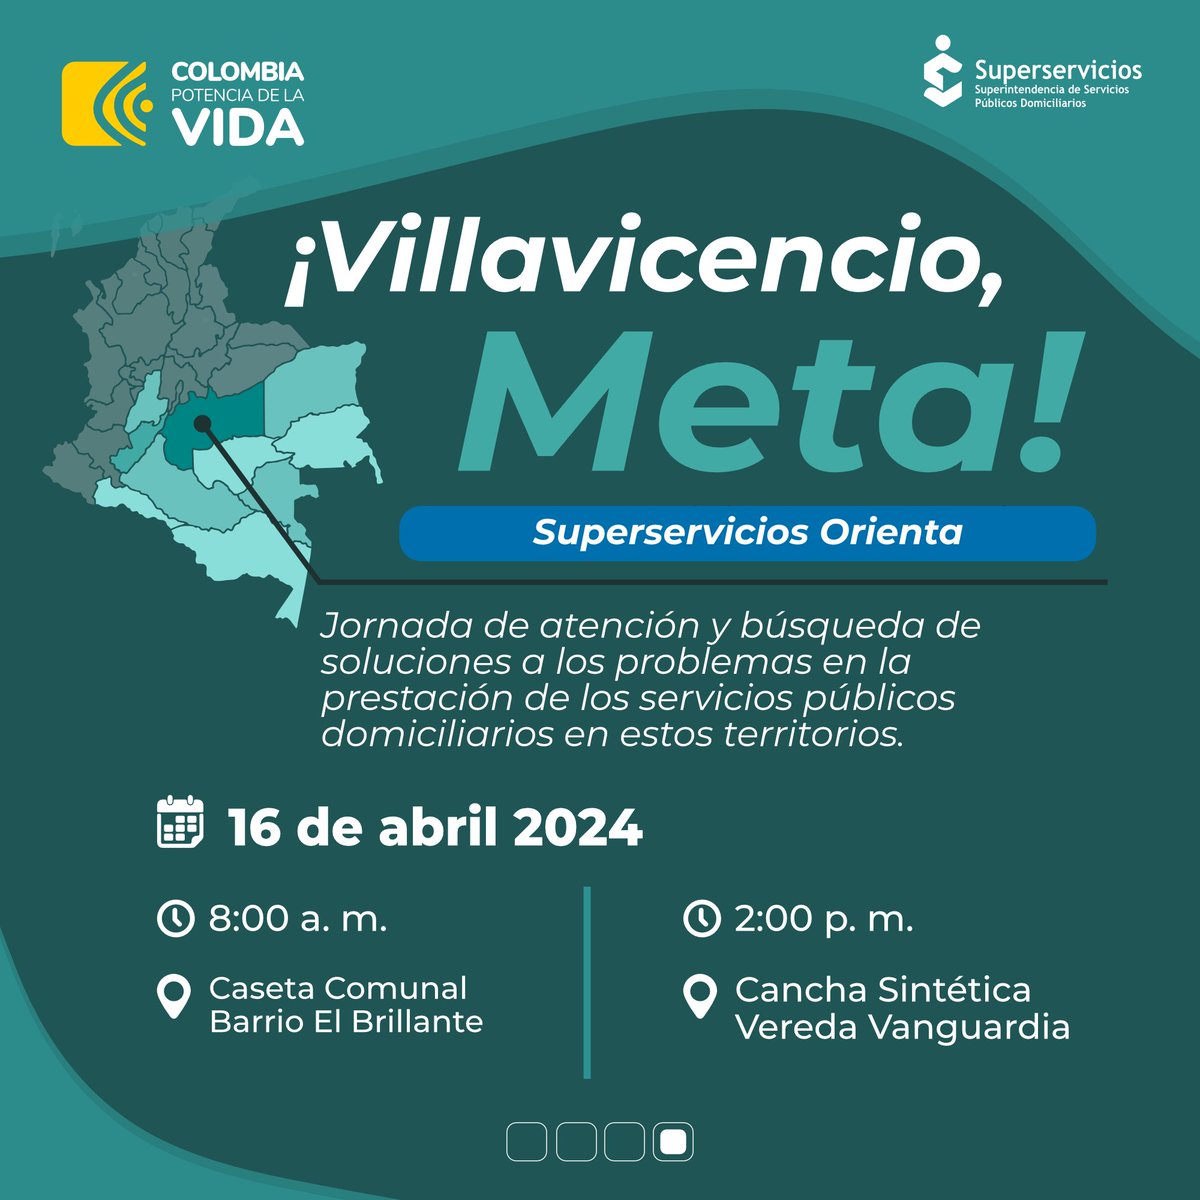 ¡#SuperserviciosOrienta en el #Meta! Agéndate con nosotros y participa en estas jornadas de diálogo con la ciudadanía. 🗓️Lunes 15 abril y martes 16 de abril ⬇️ superservicios.gov.co